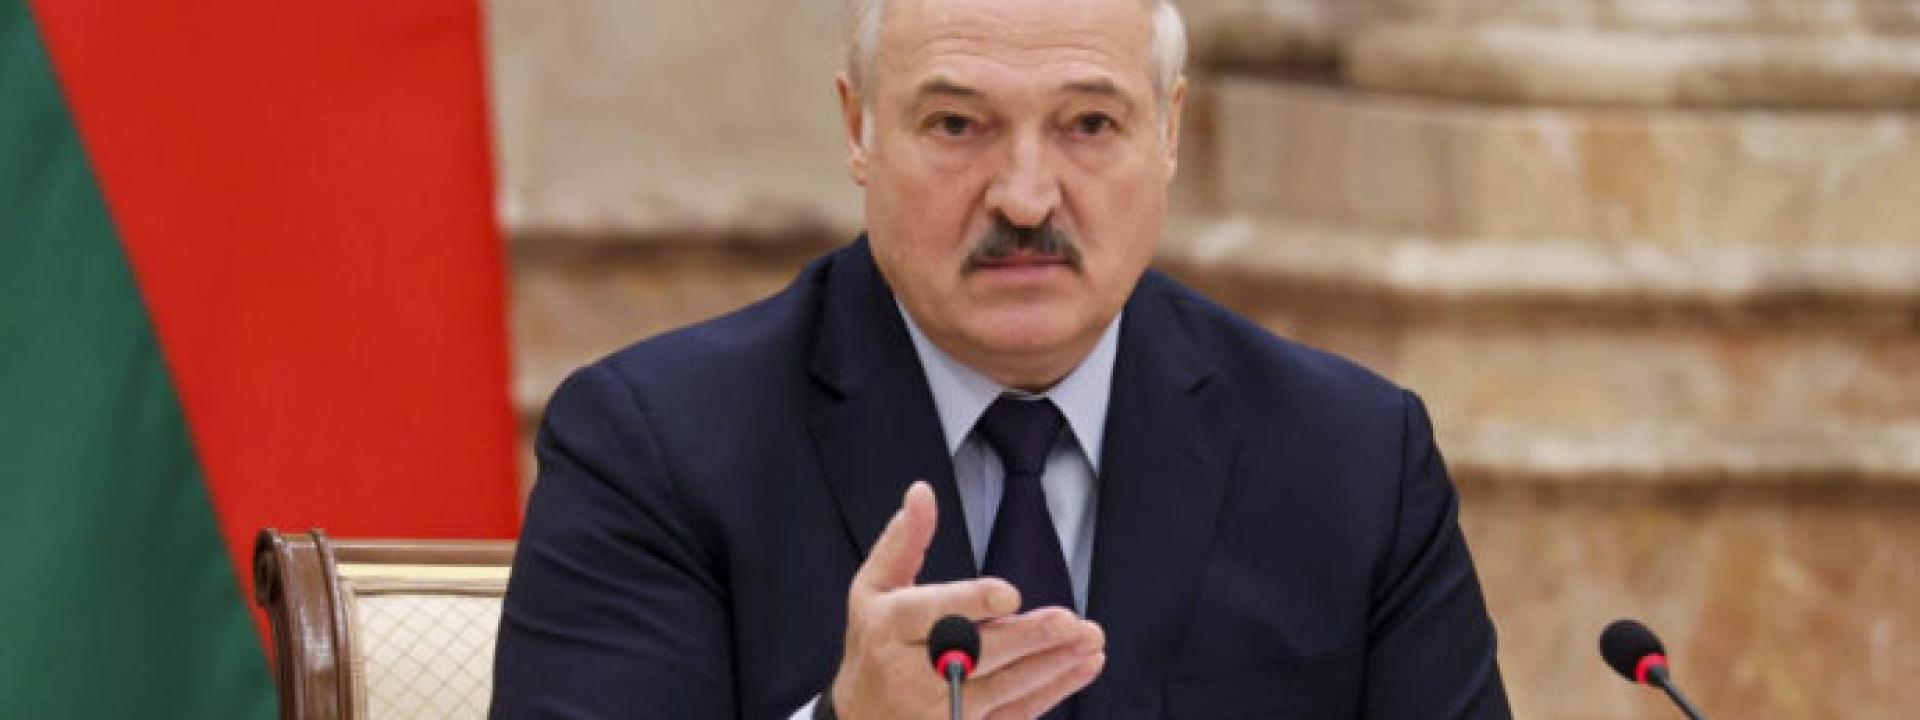 Bielorussia, Lukashenko: 